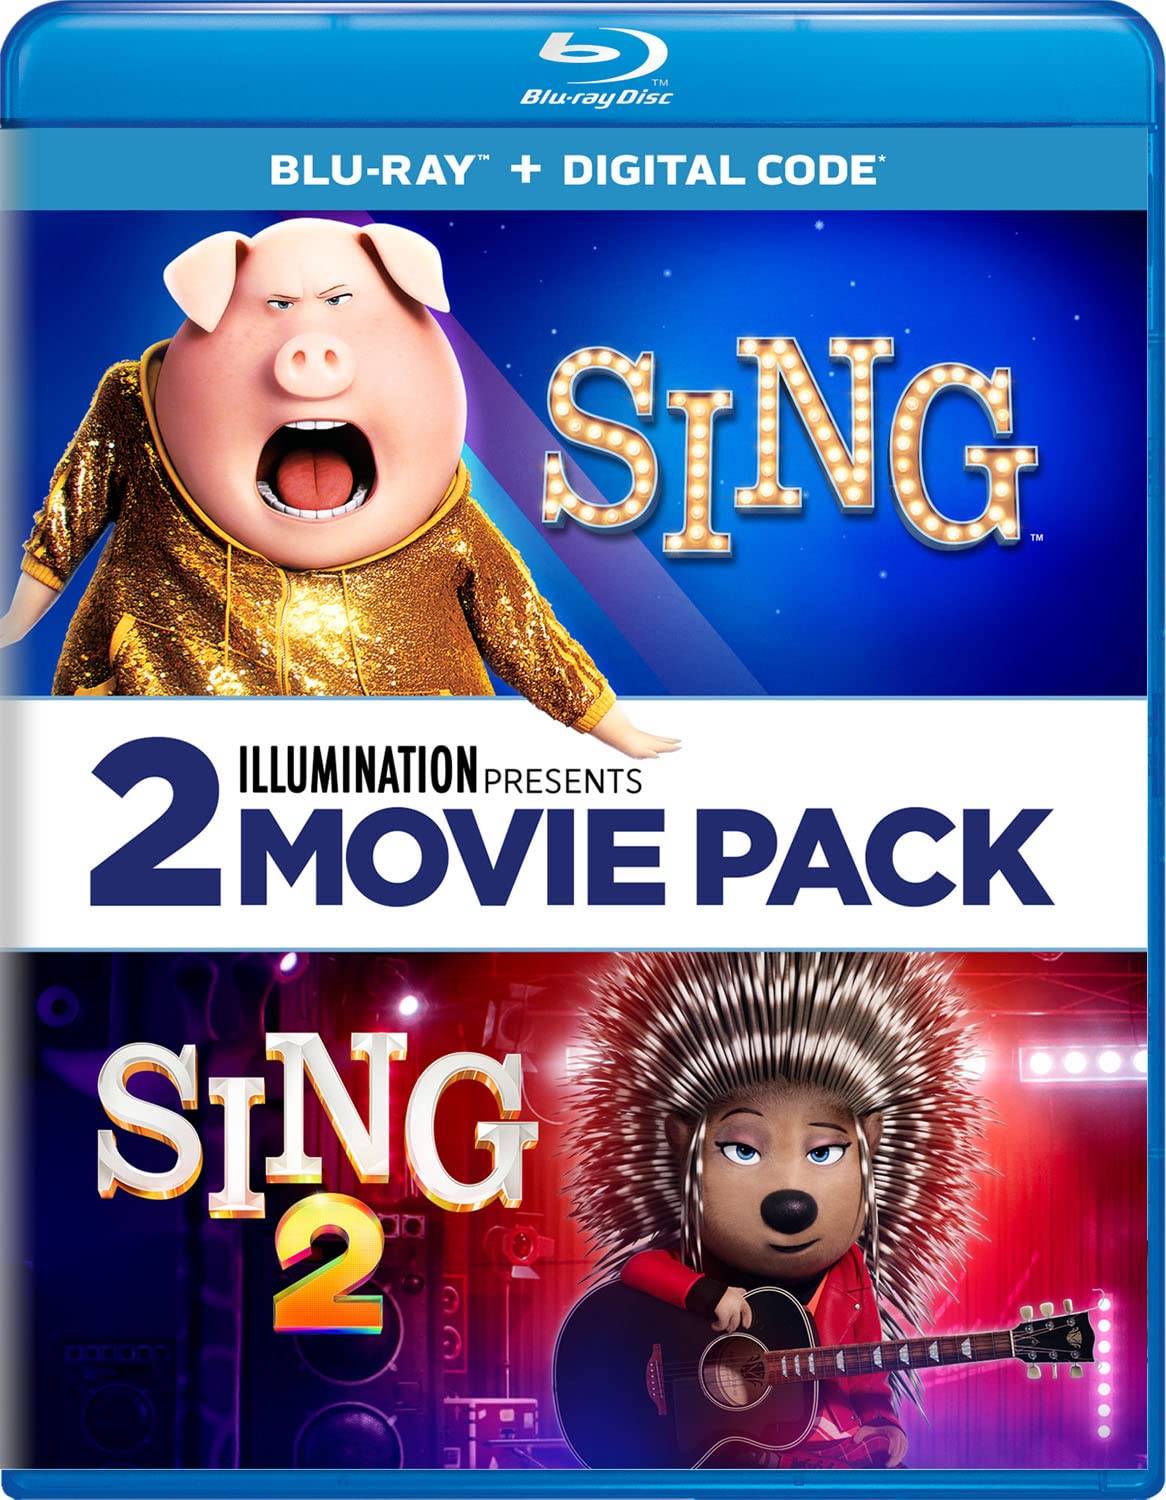 Sing Sing 2 Blu-ray 2-Pack